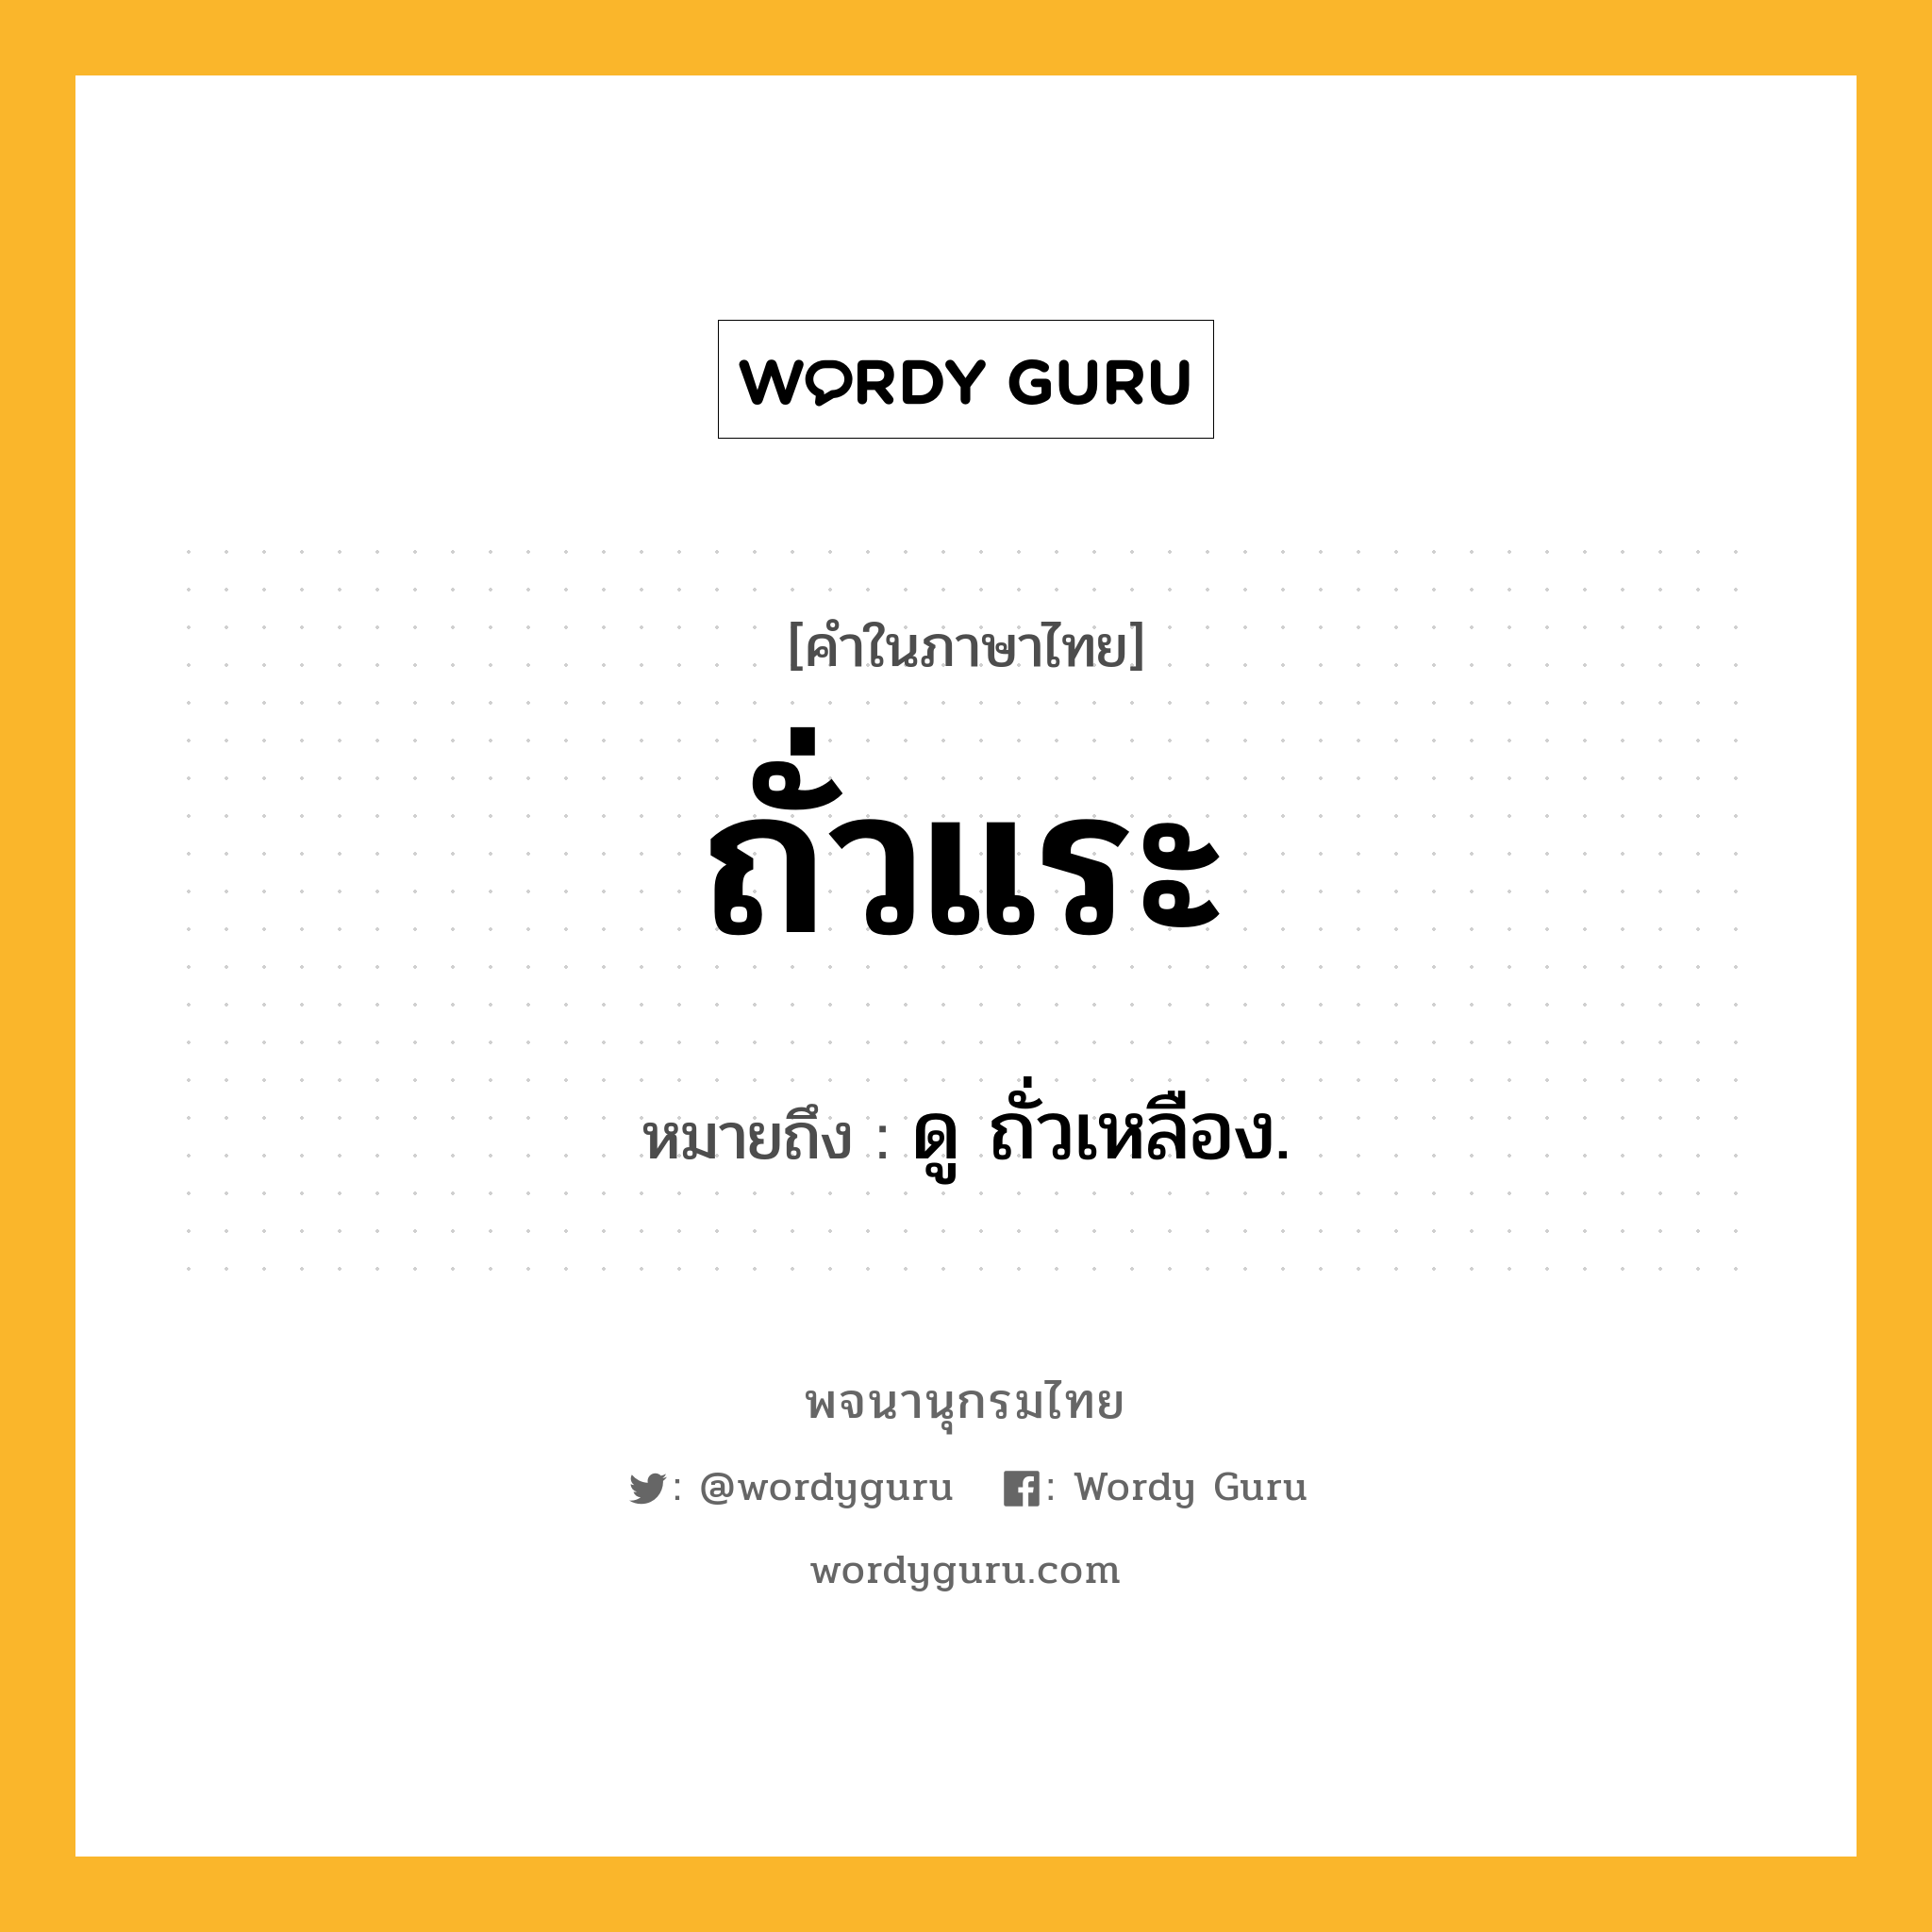 ถั่วแระ หมายถึงอะไร?, คำในภาษาไทย ถั่วแระ หมายถึง ดู ถั่วเหลือง.